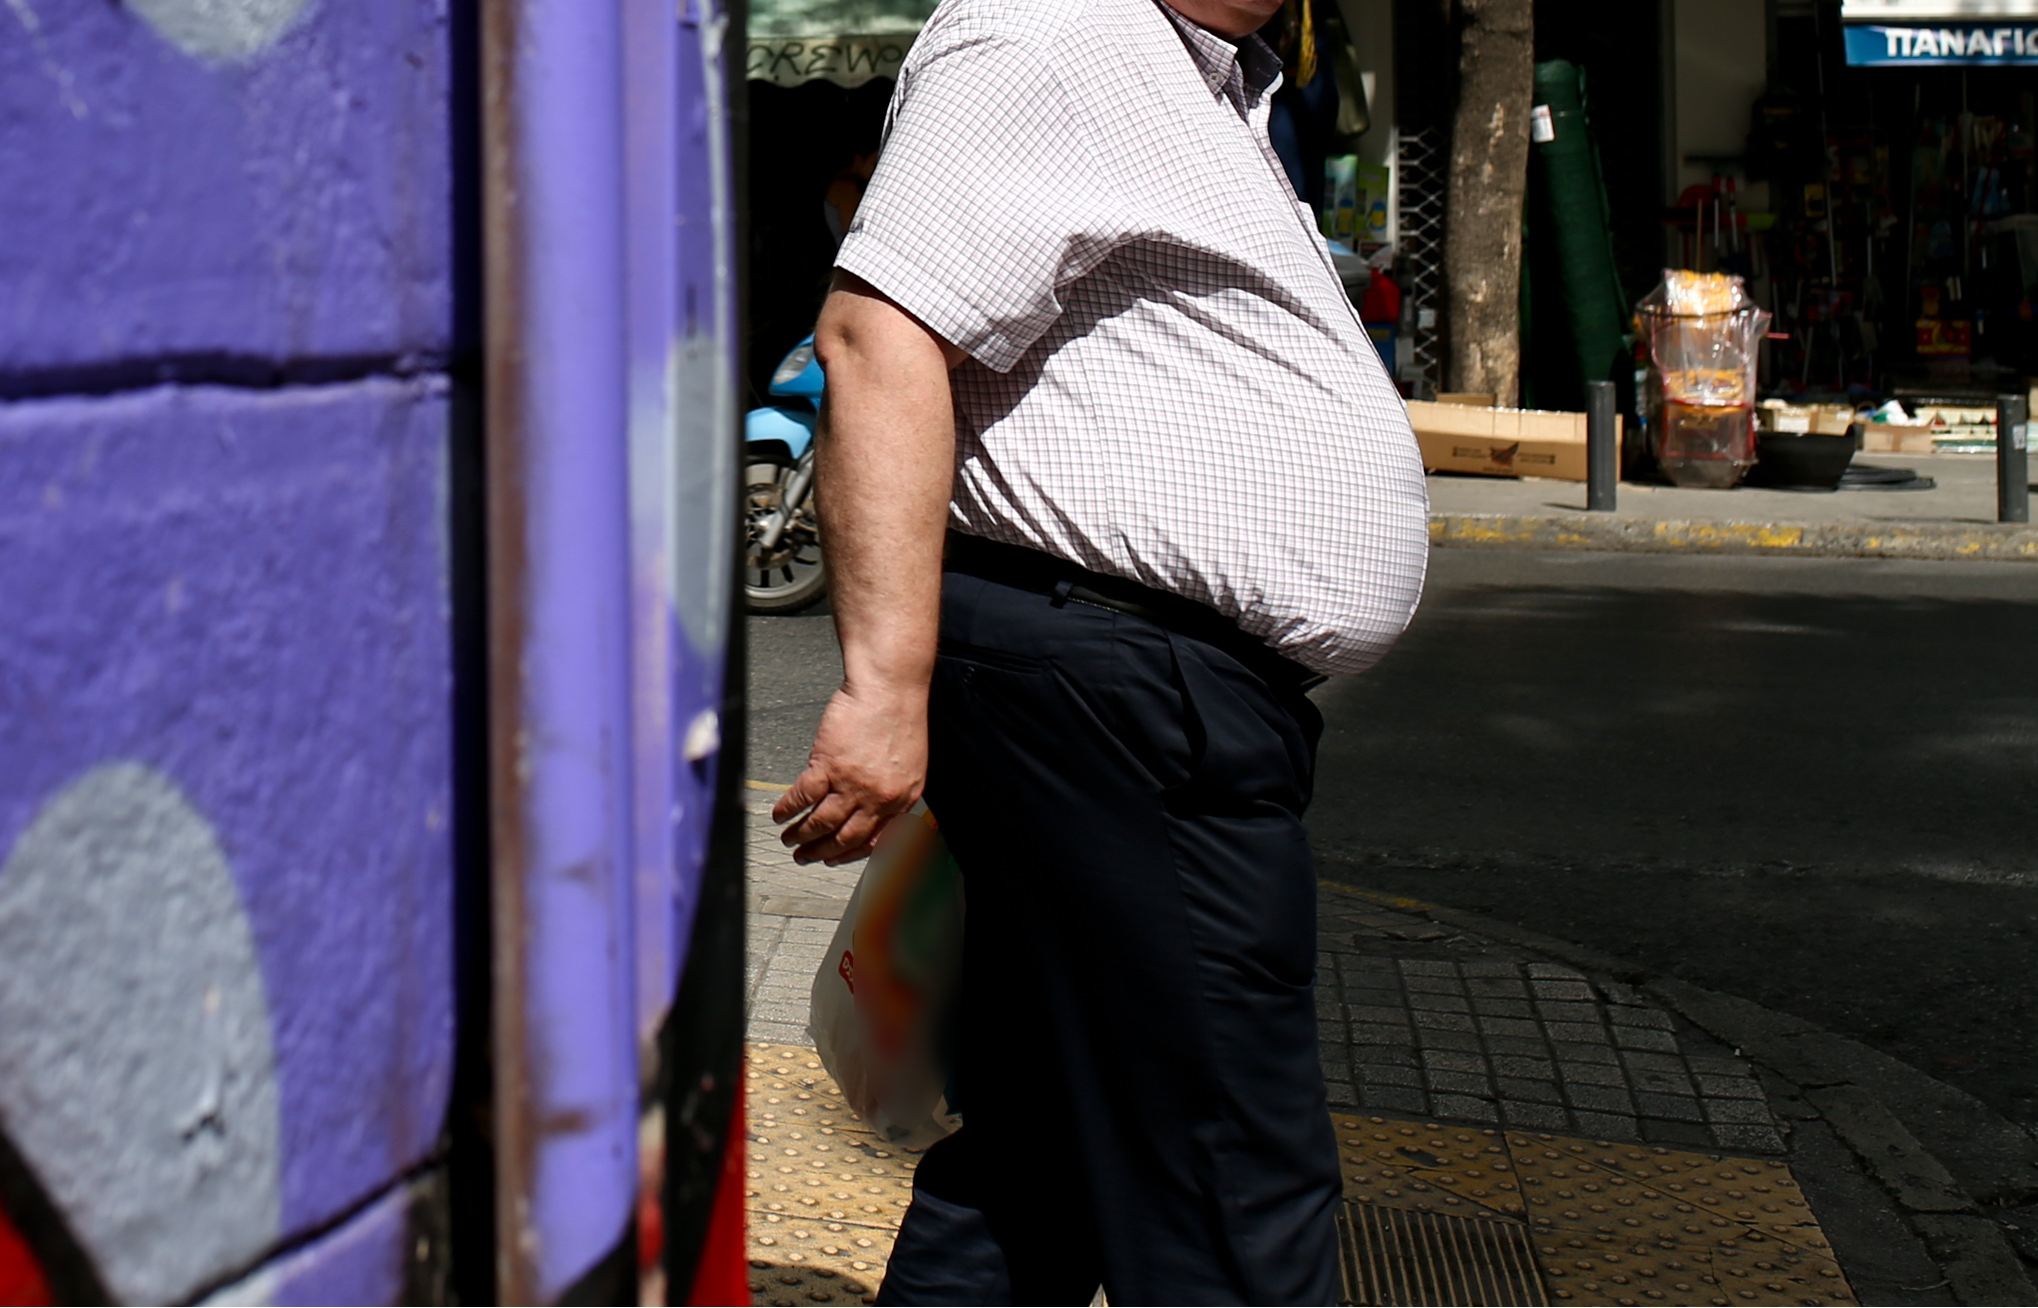 Η παχυσαρκία συνδέεται με δυσμενή αποτελέσματα στη θεραπεία της λευχαιμίας